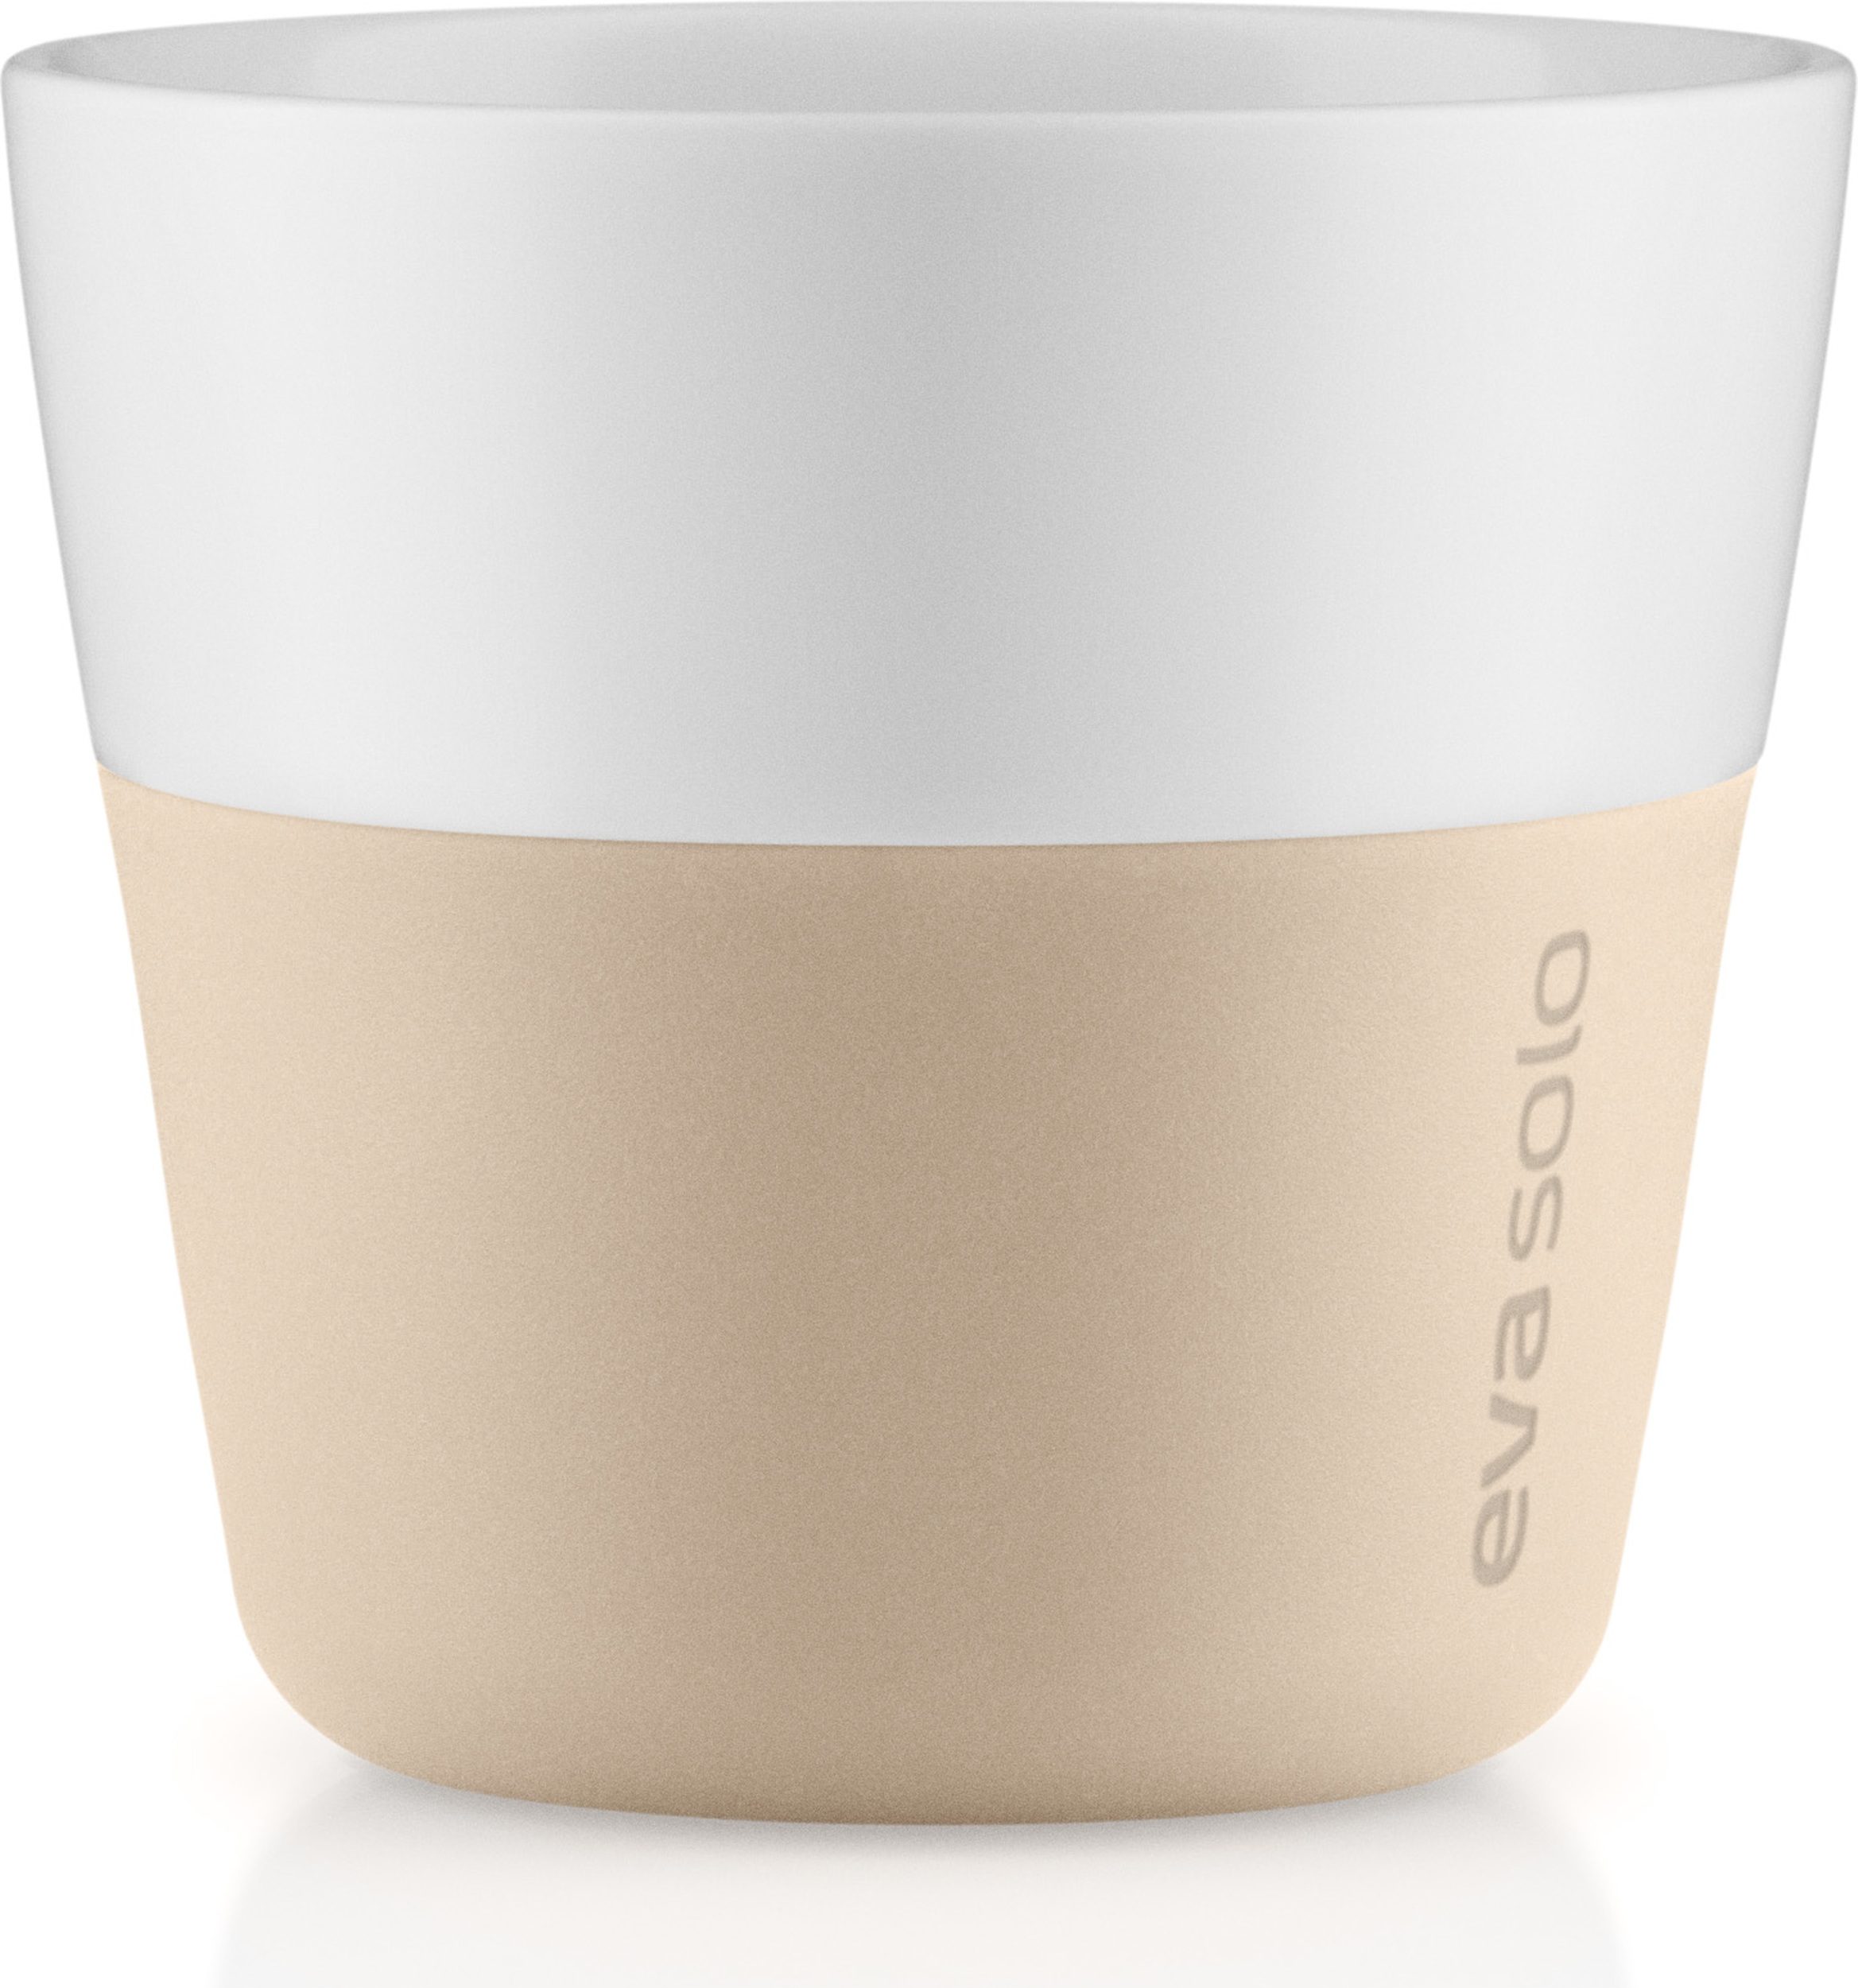 https://3fa-media.com/eva-solo/eva-solo-eva-solo-lungo-coffee-cups-light-beige-2-pcs__123642_1bb2292-s2500x2500.jpg